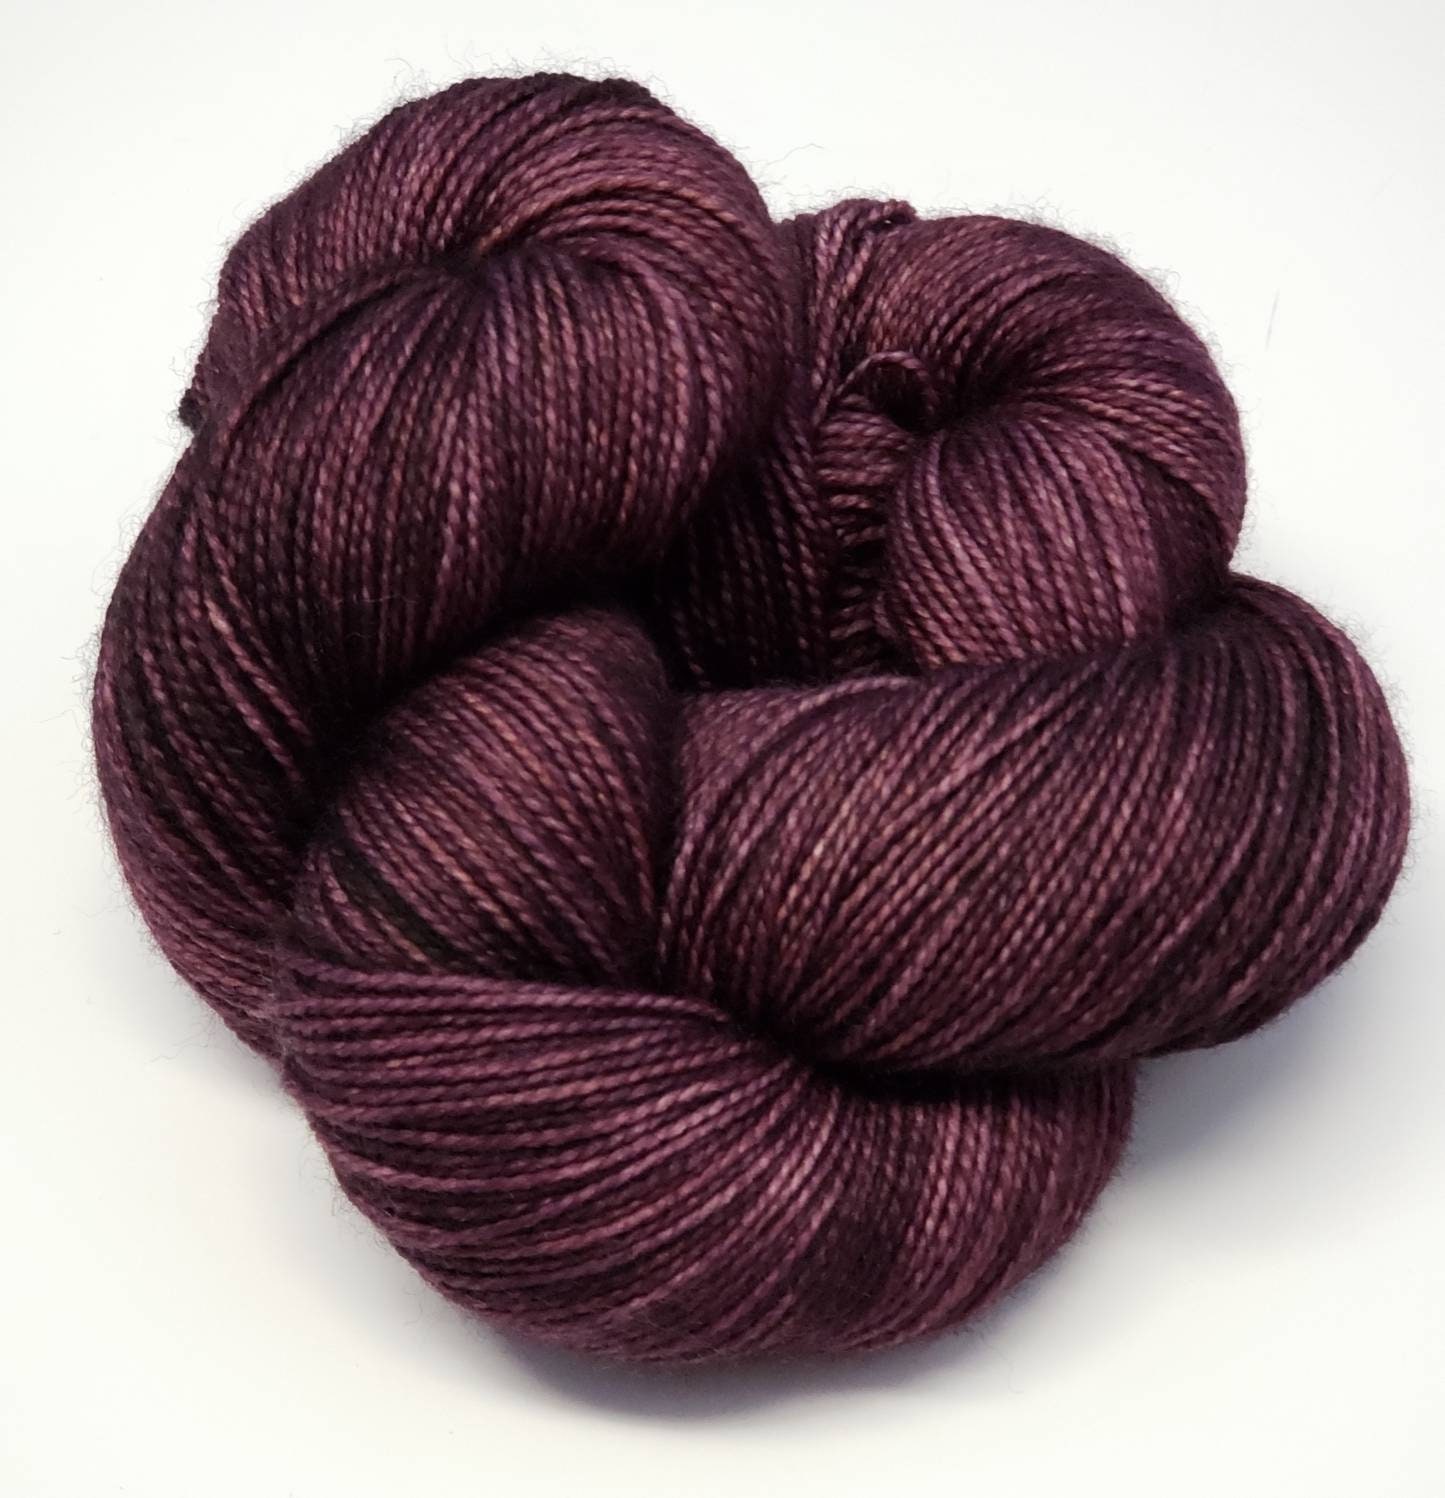 Eggplant - Hand-dyed Yarn, Sock Yarn, Wool Yarn - Dark Purple – 75